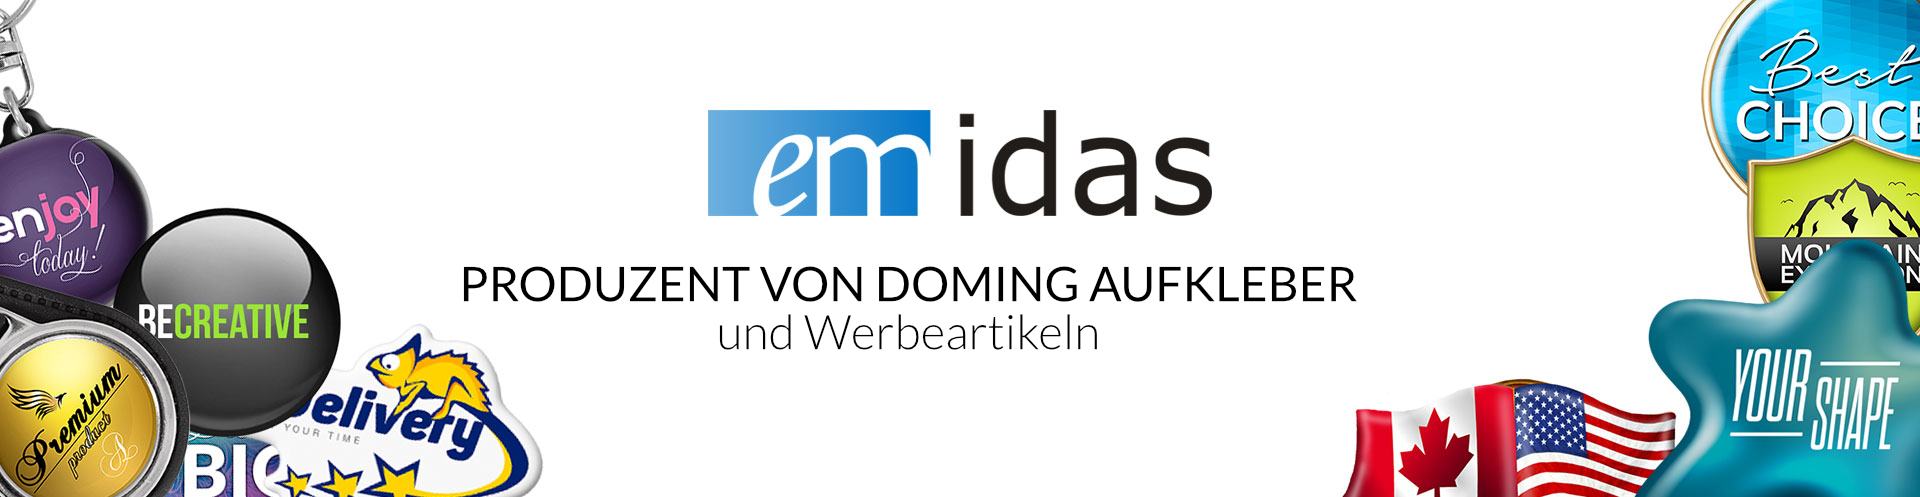 Emidas | Produzent von Doming Aufkleber und Werbeartikeln